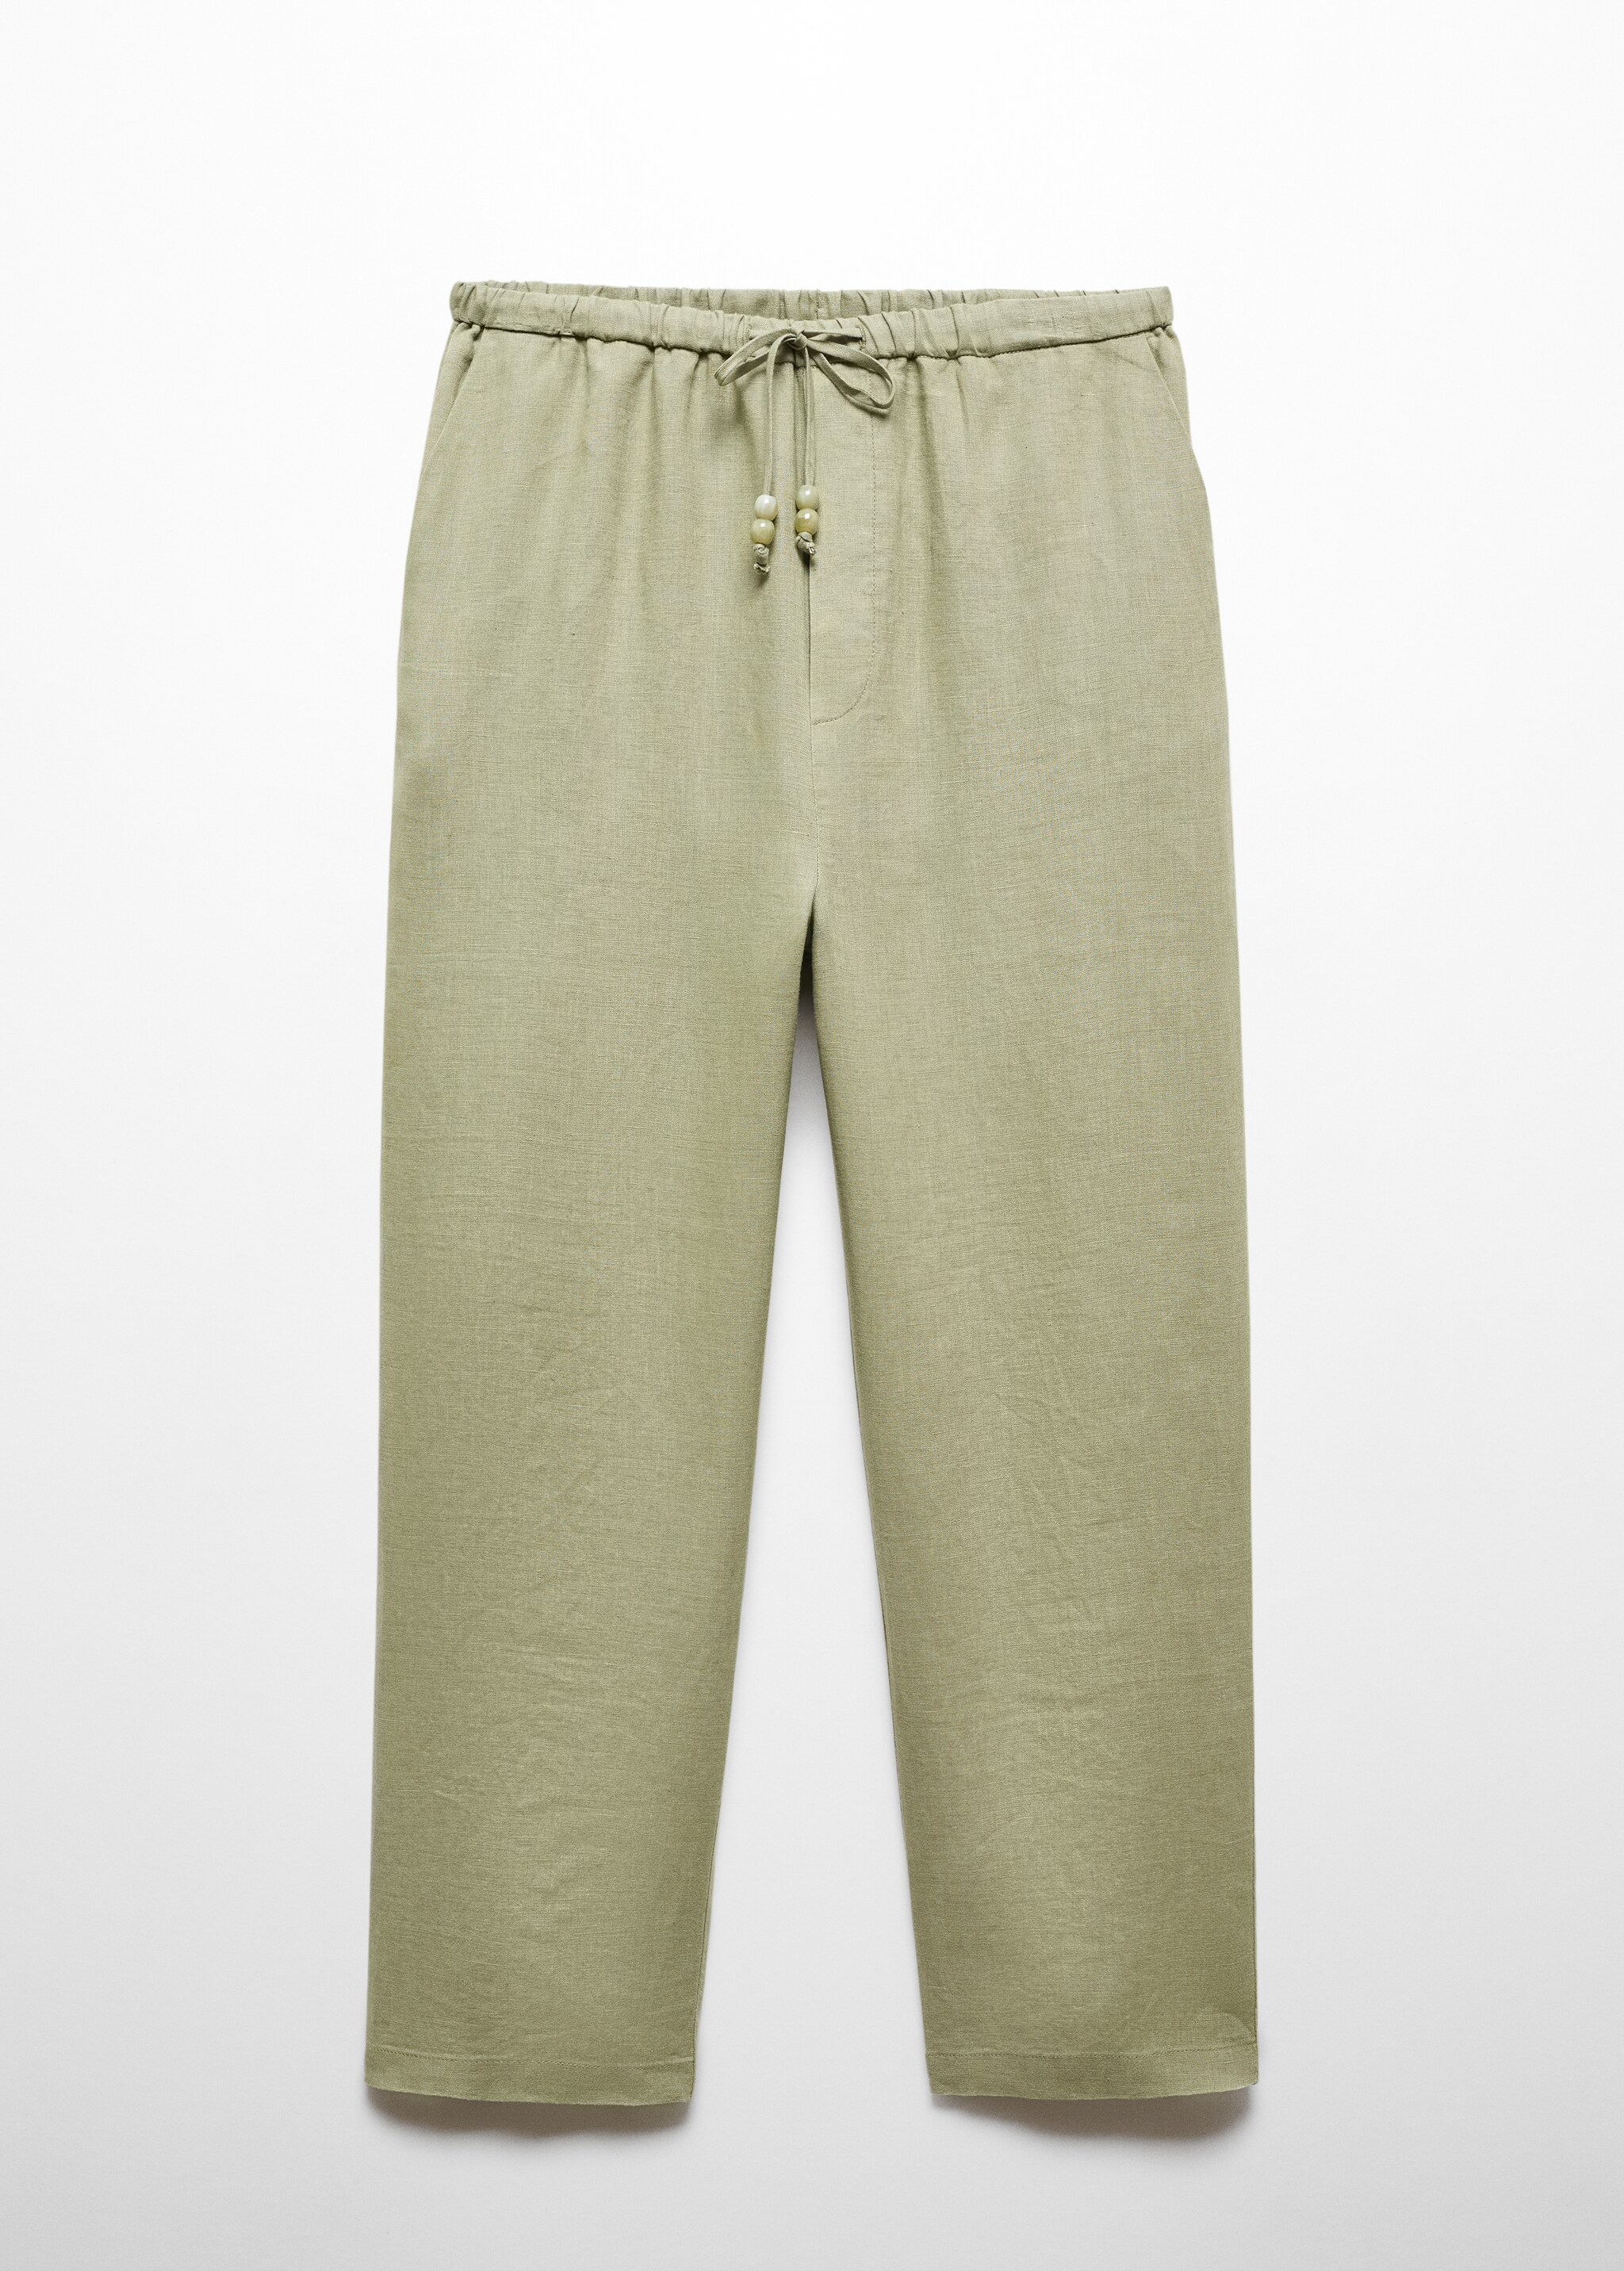 Pantaloni 100% lino - Articolo senza modello